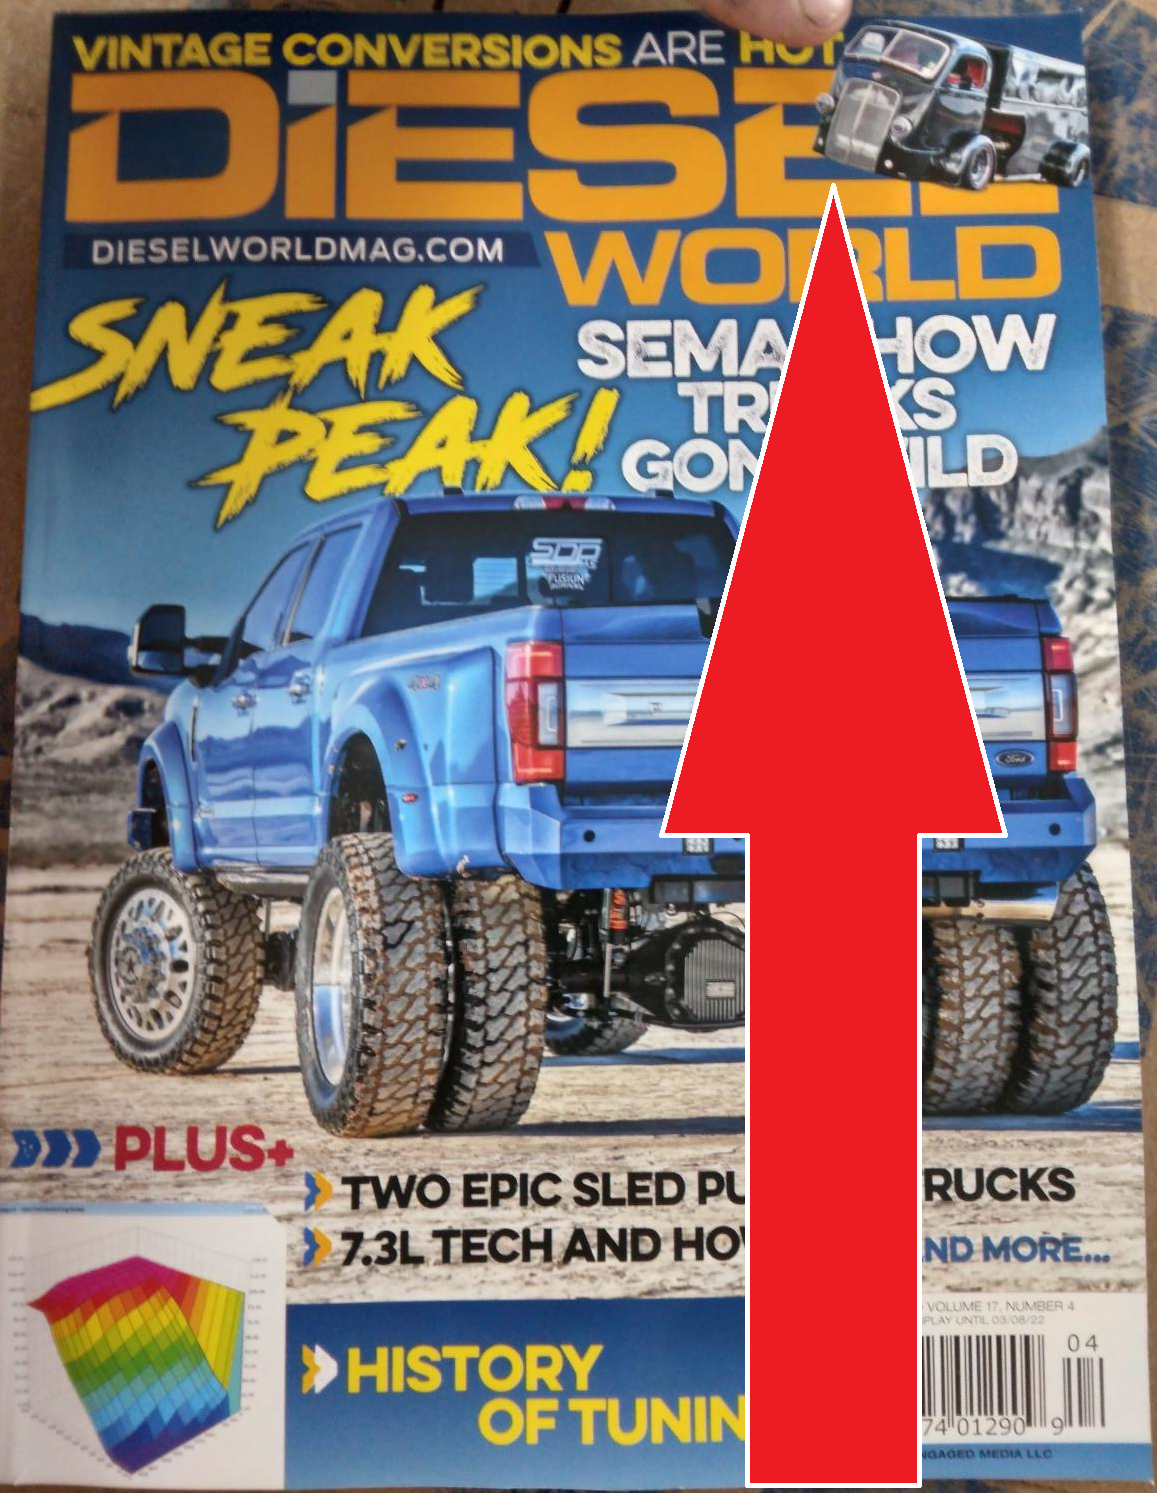 Featured in Diesel World Magazine